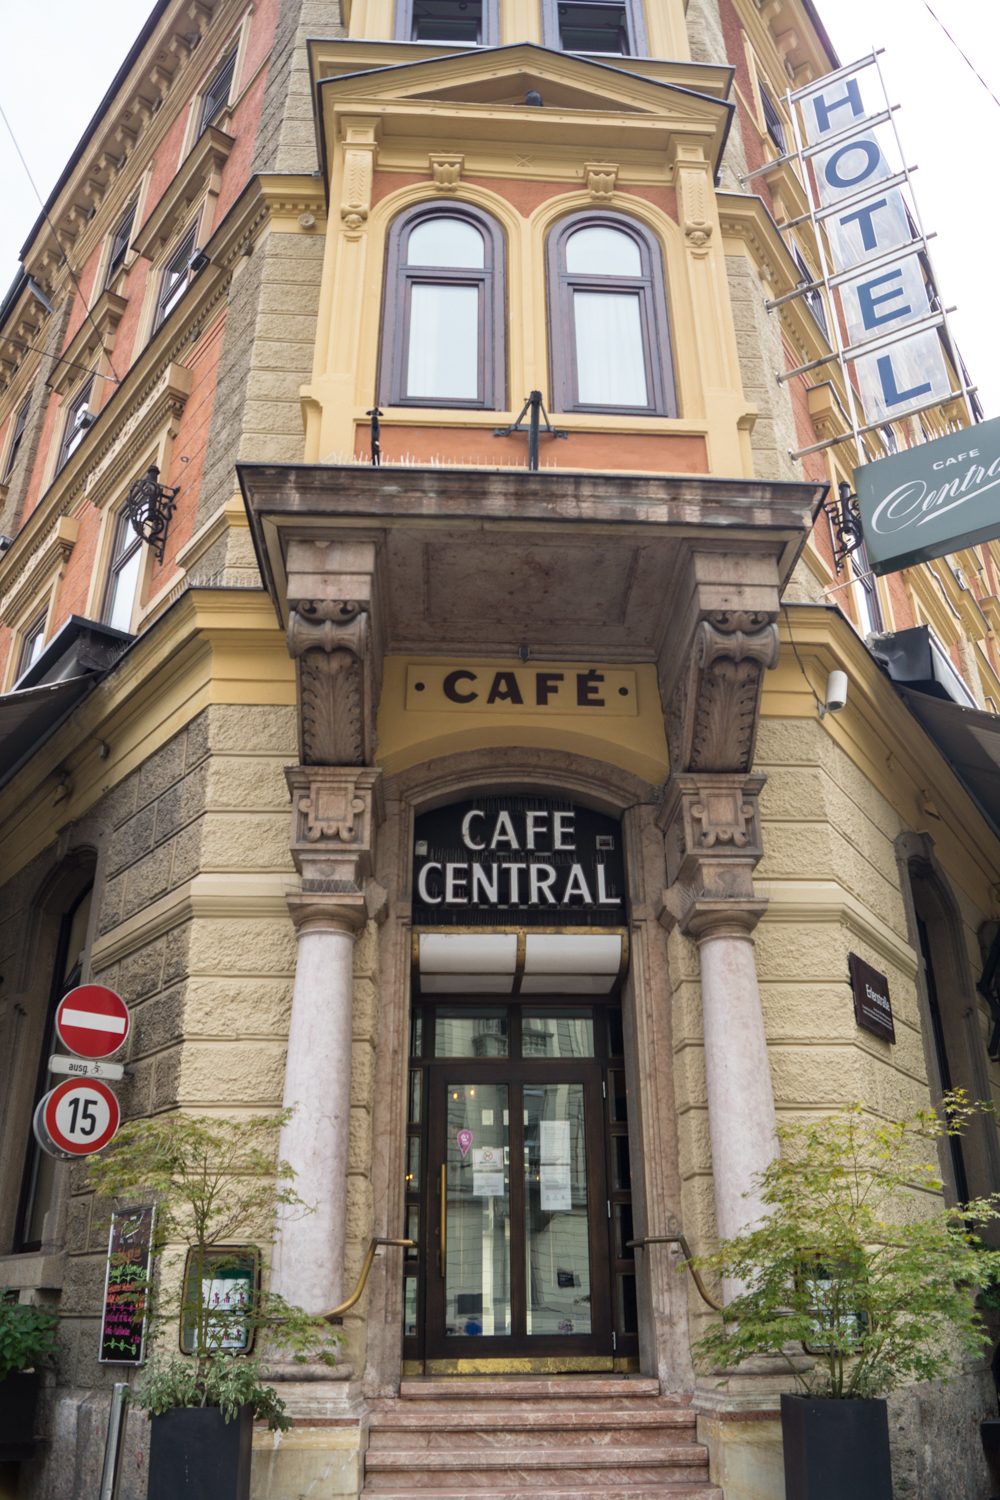 Cafe Central in Innsbruck | Tolle Cafes und Bars in Innsbruck | Kurztrip Innsbruck - Sehenswürdigkeiten und Tipps für einen unvergesslichen Aufenthalt